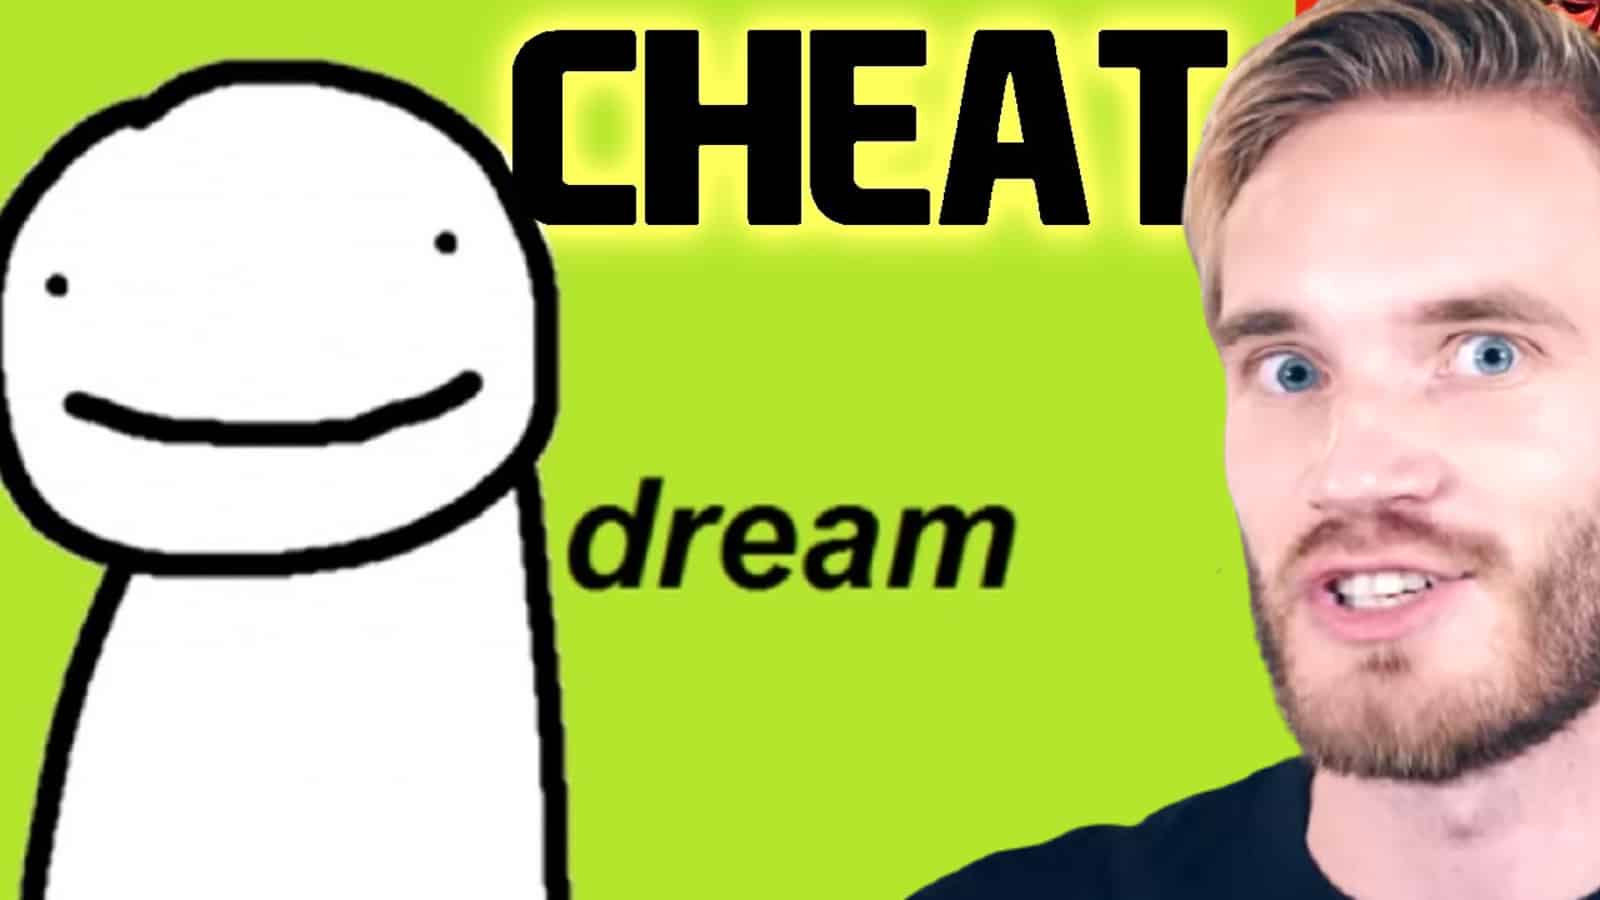 PewDiePie and Dream